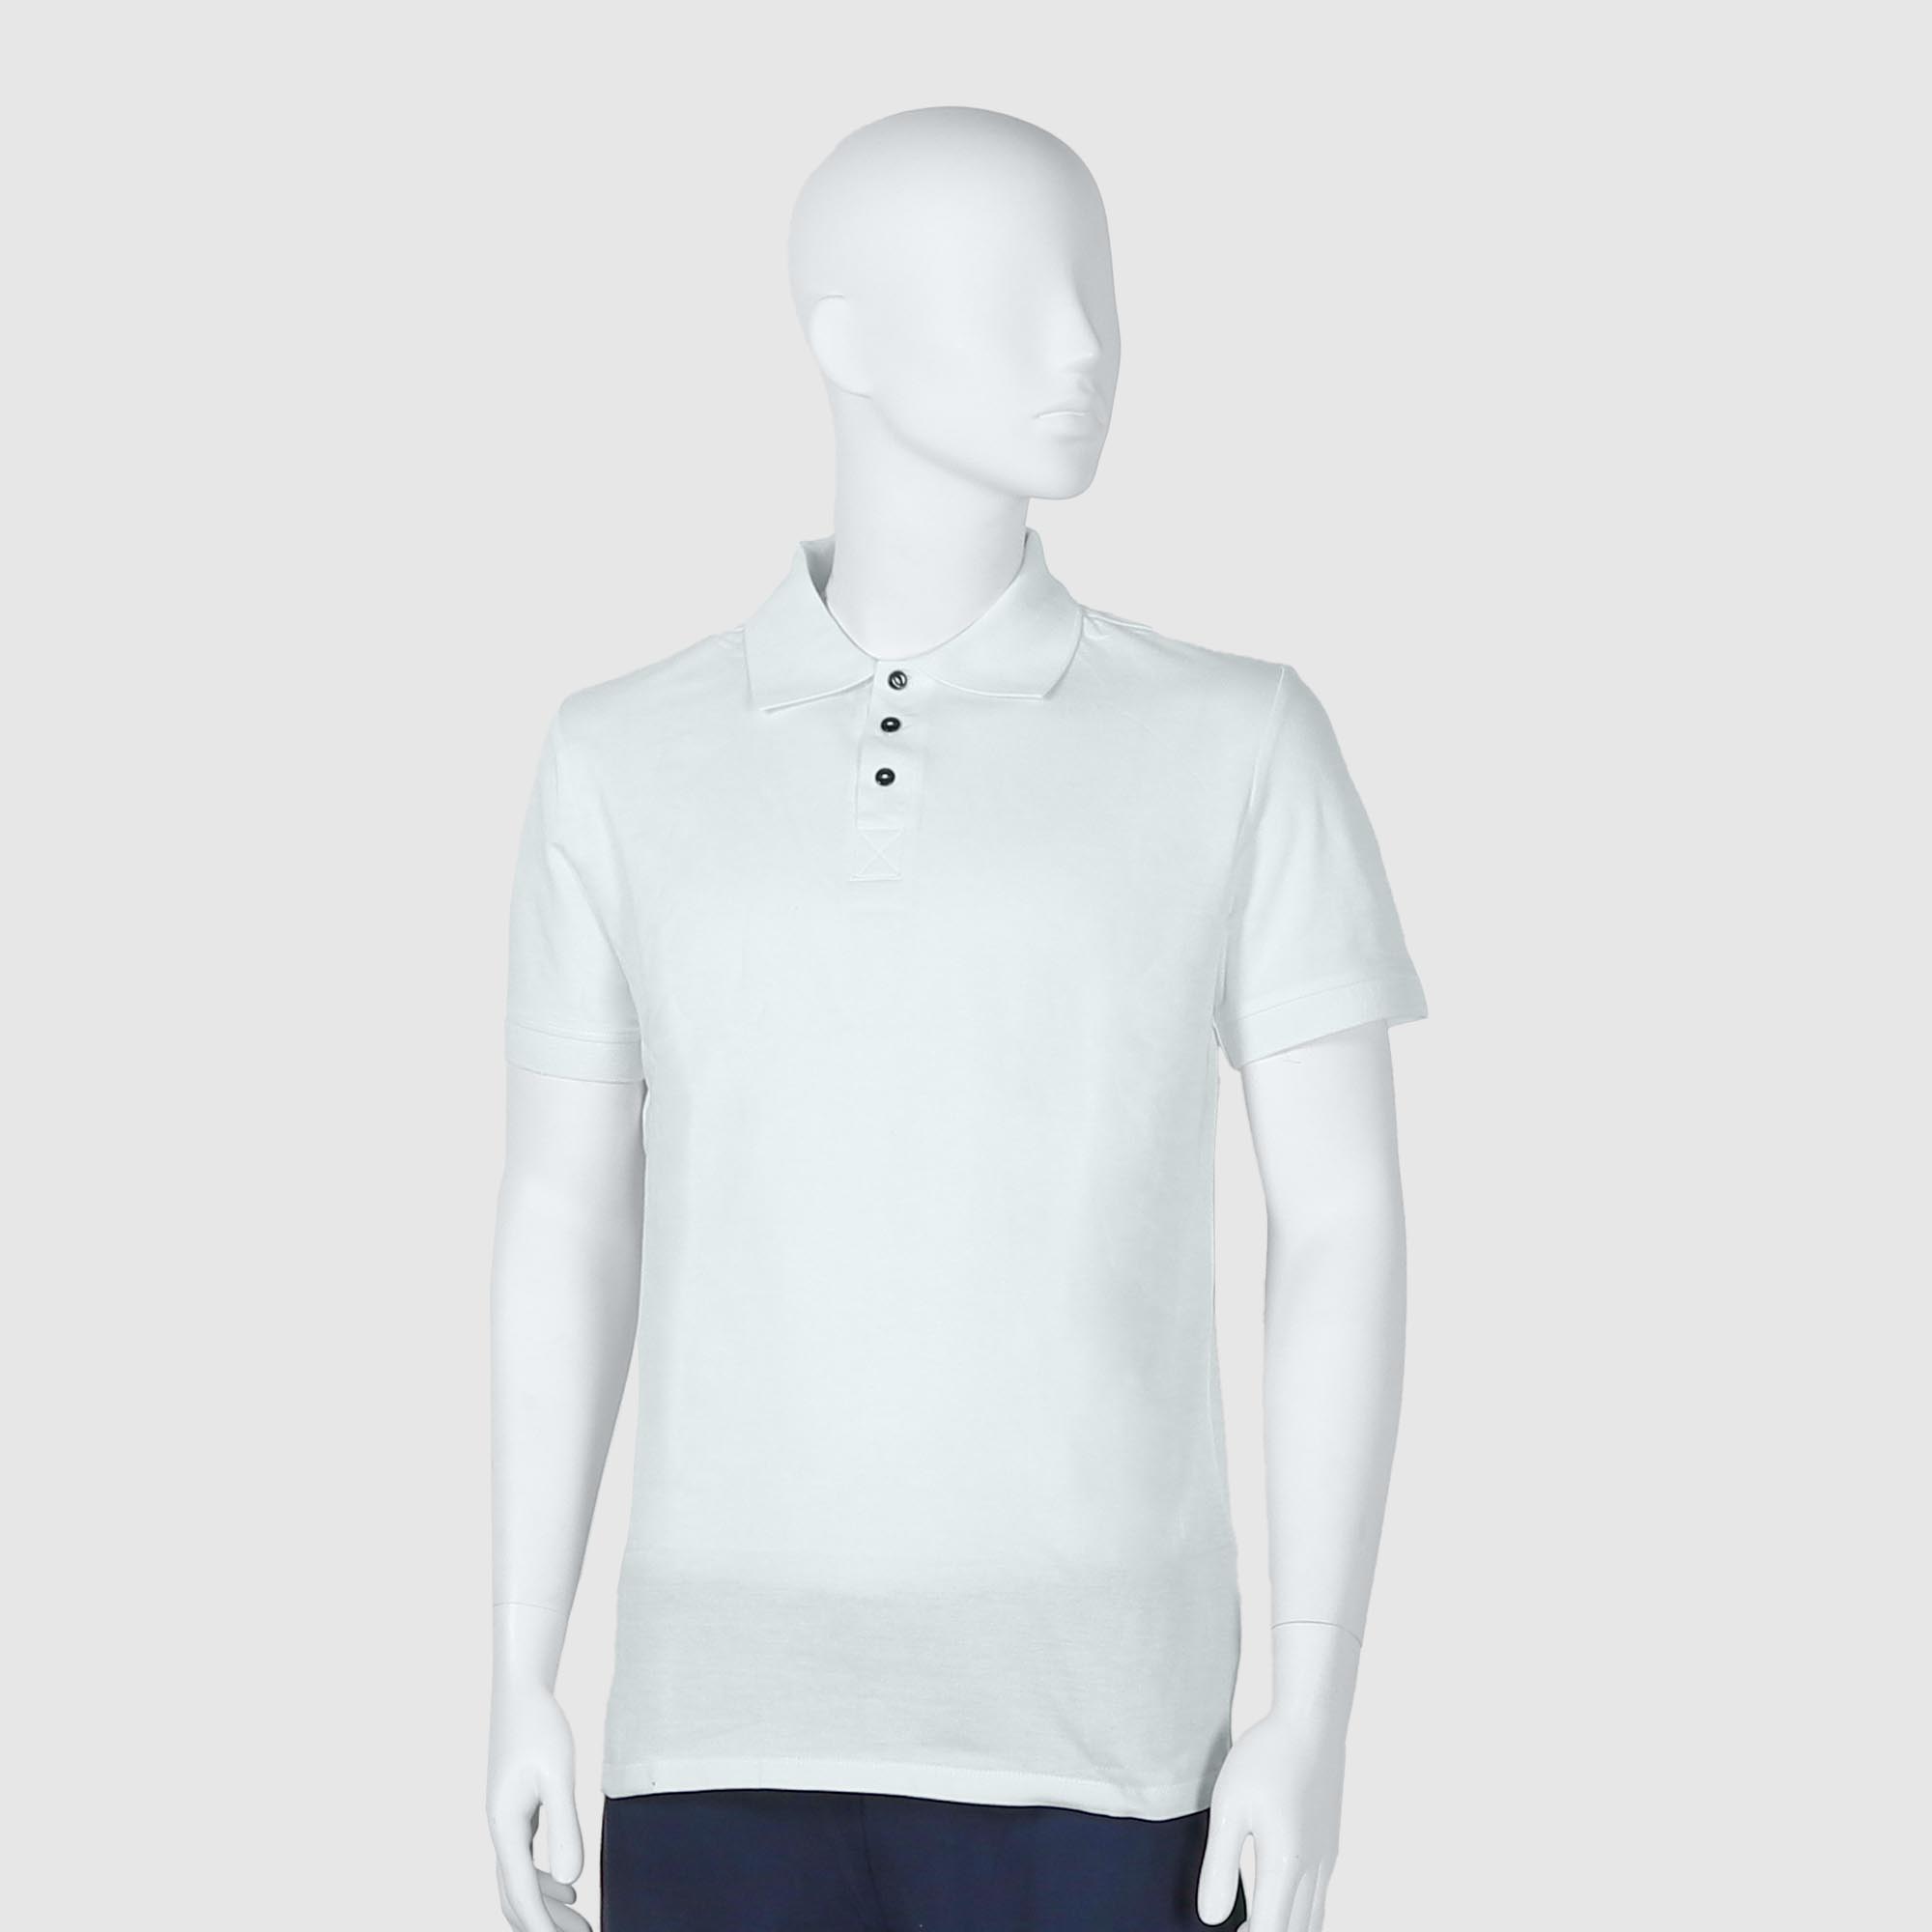 Мужская футболка-поло Diva Teks белая (DTD-07), цвет белый, размер 46-48 - фото 1